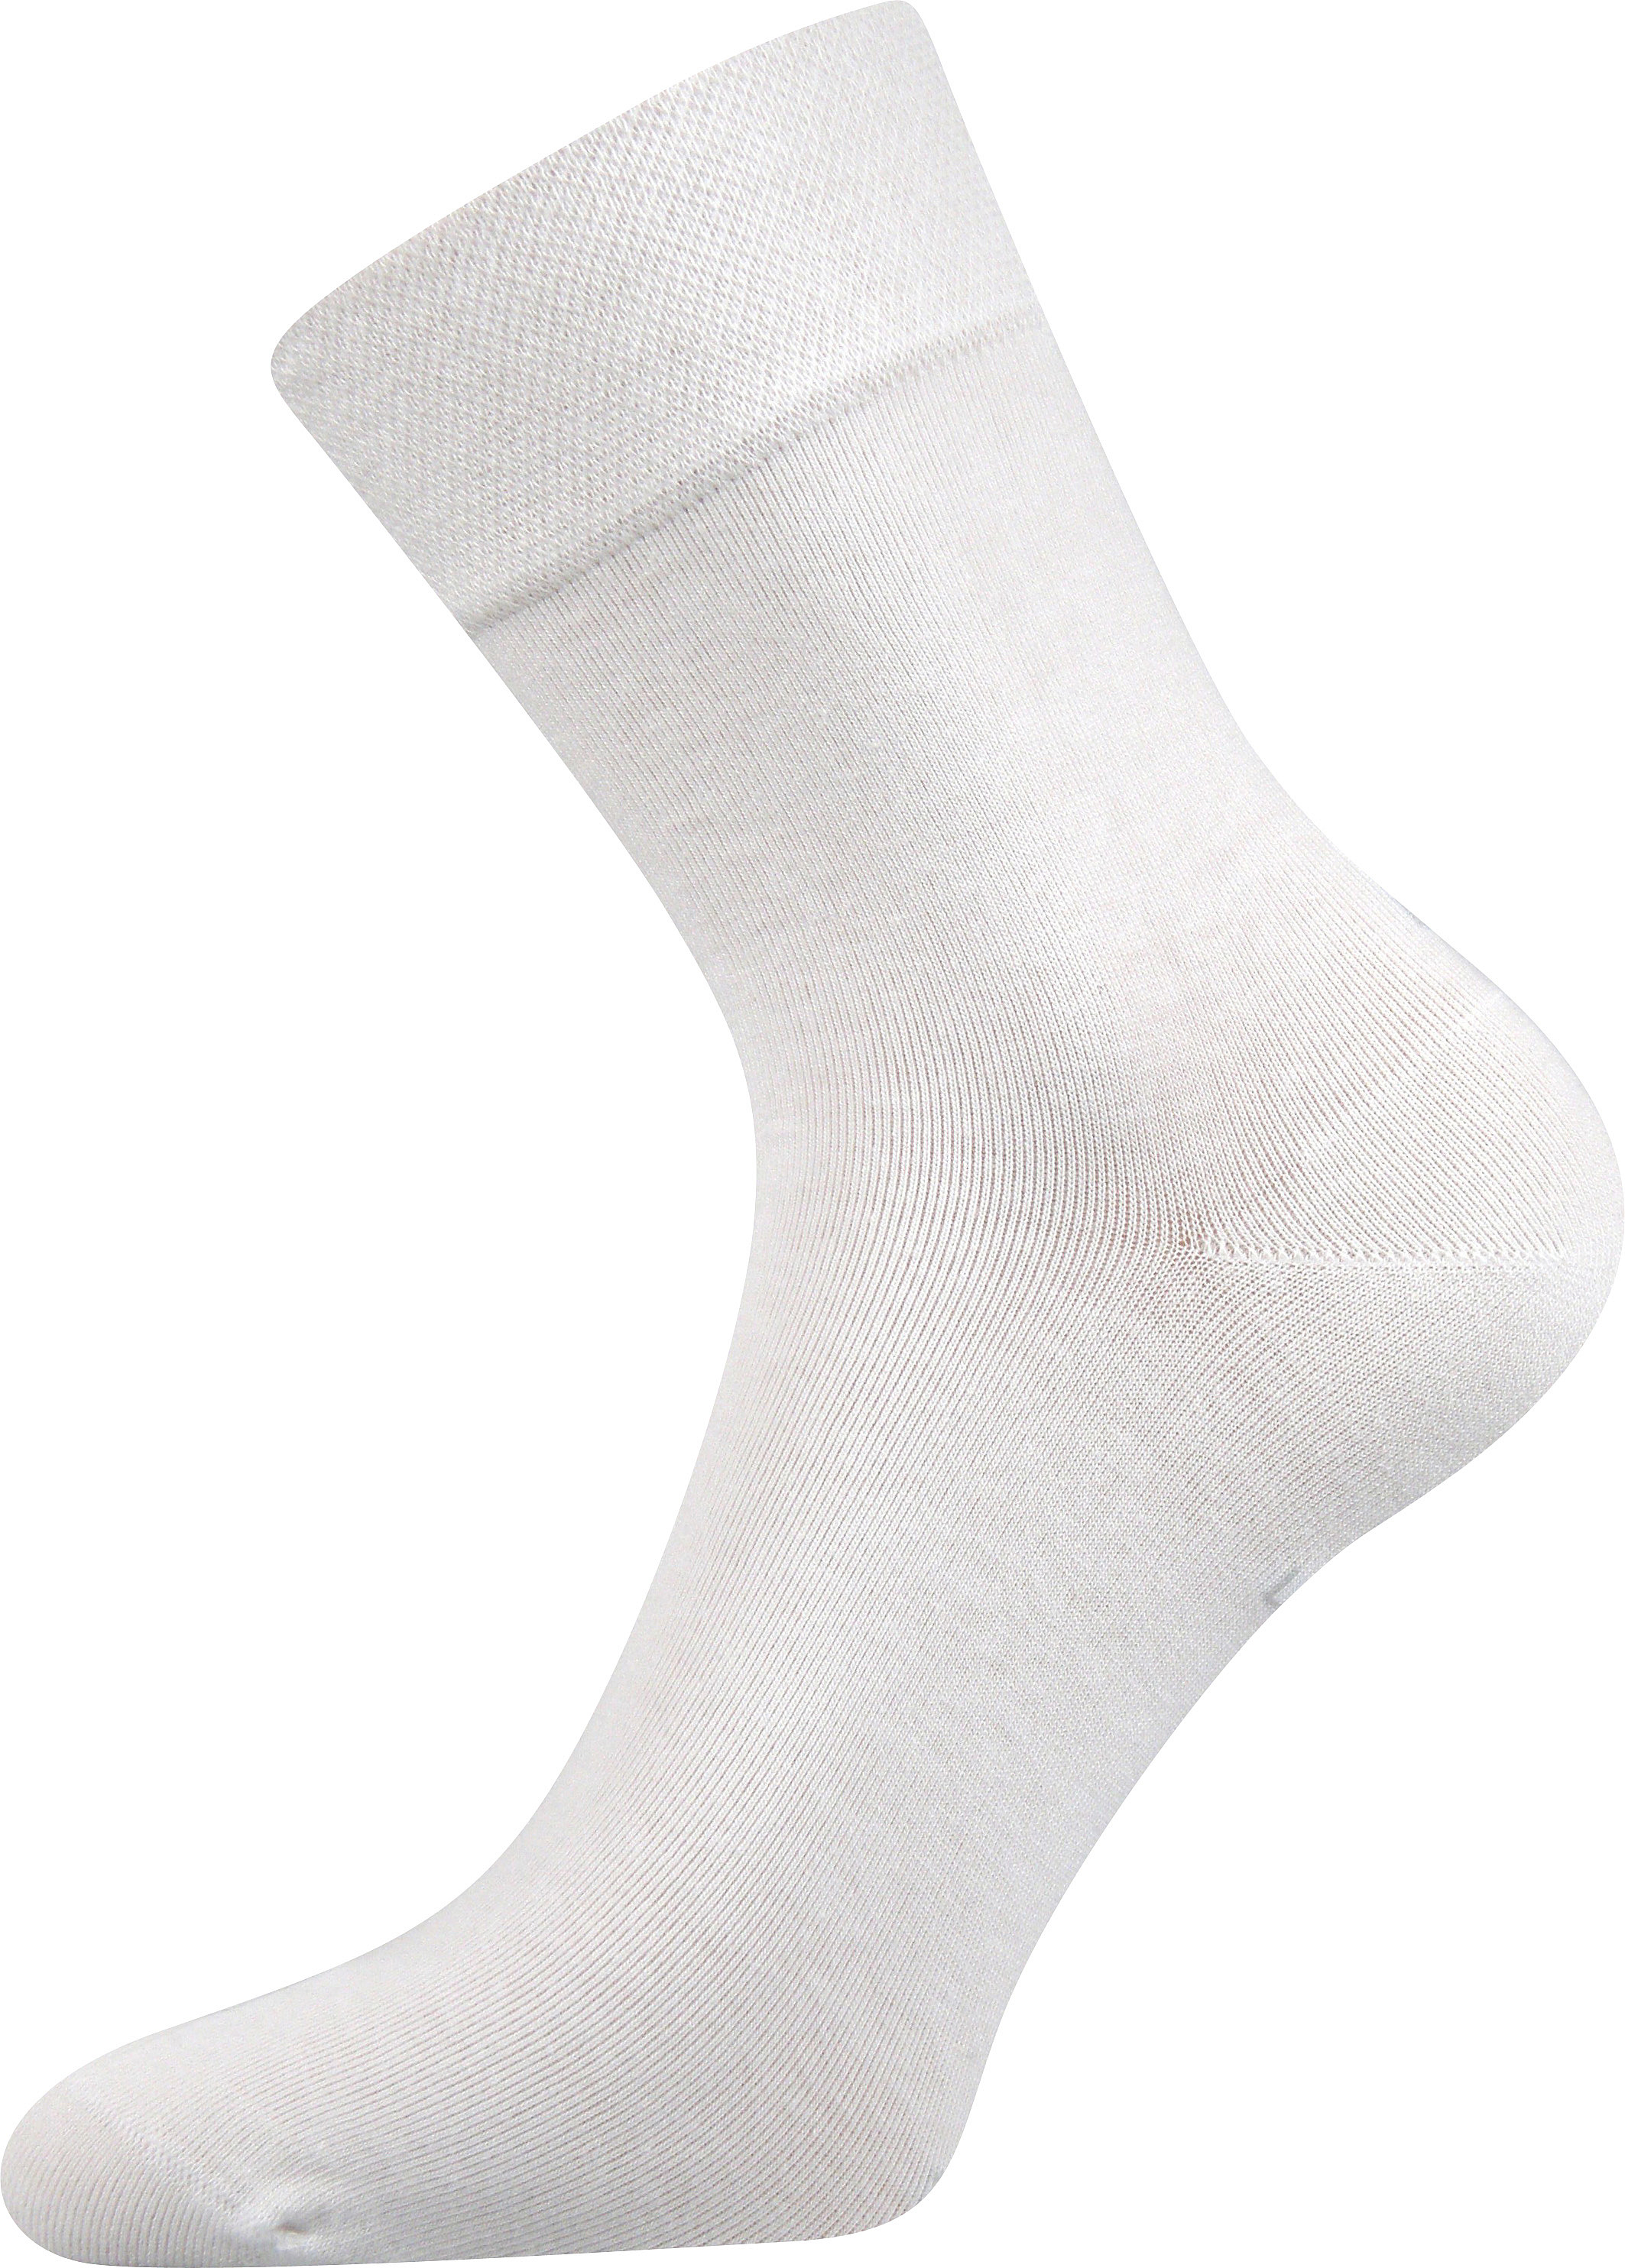 Ponožky společenské Lonka Haner - bílé, 47-50